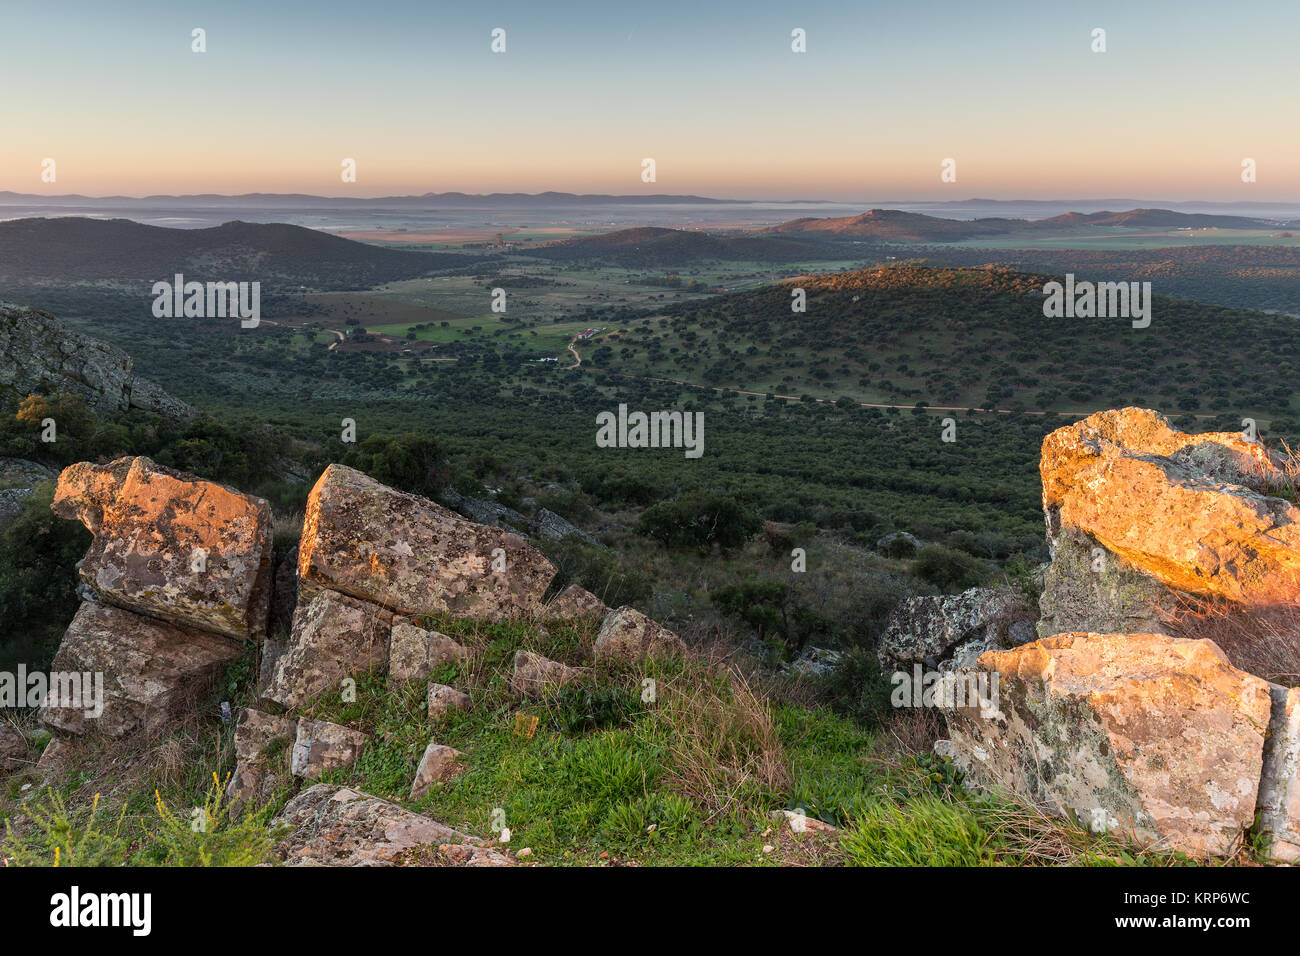 Amanecer desde una montaña junto a Sierra de fuentes. España. Foto de stock